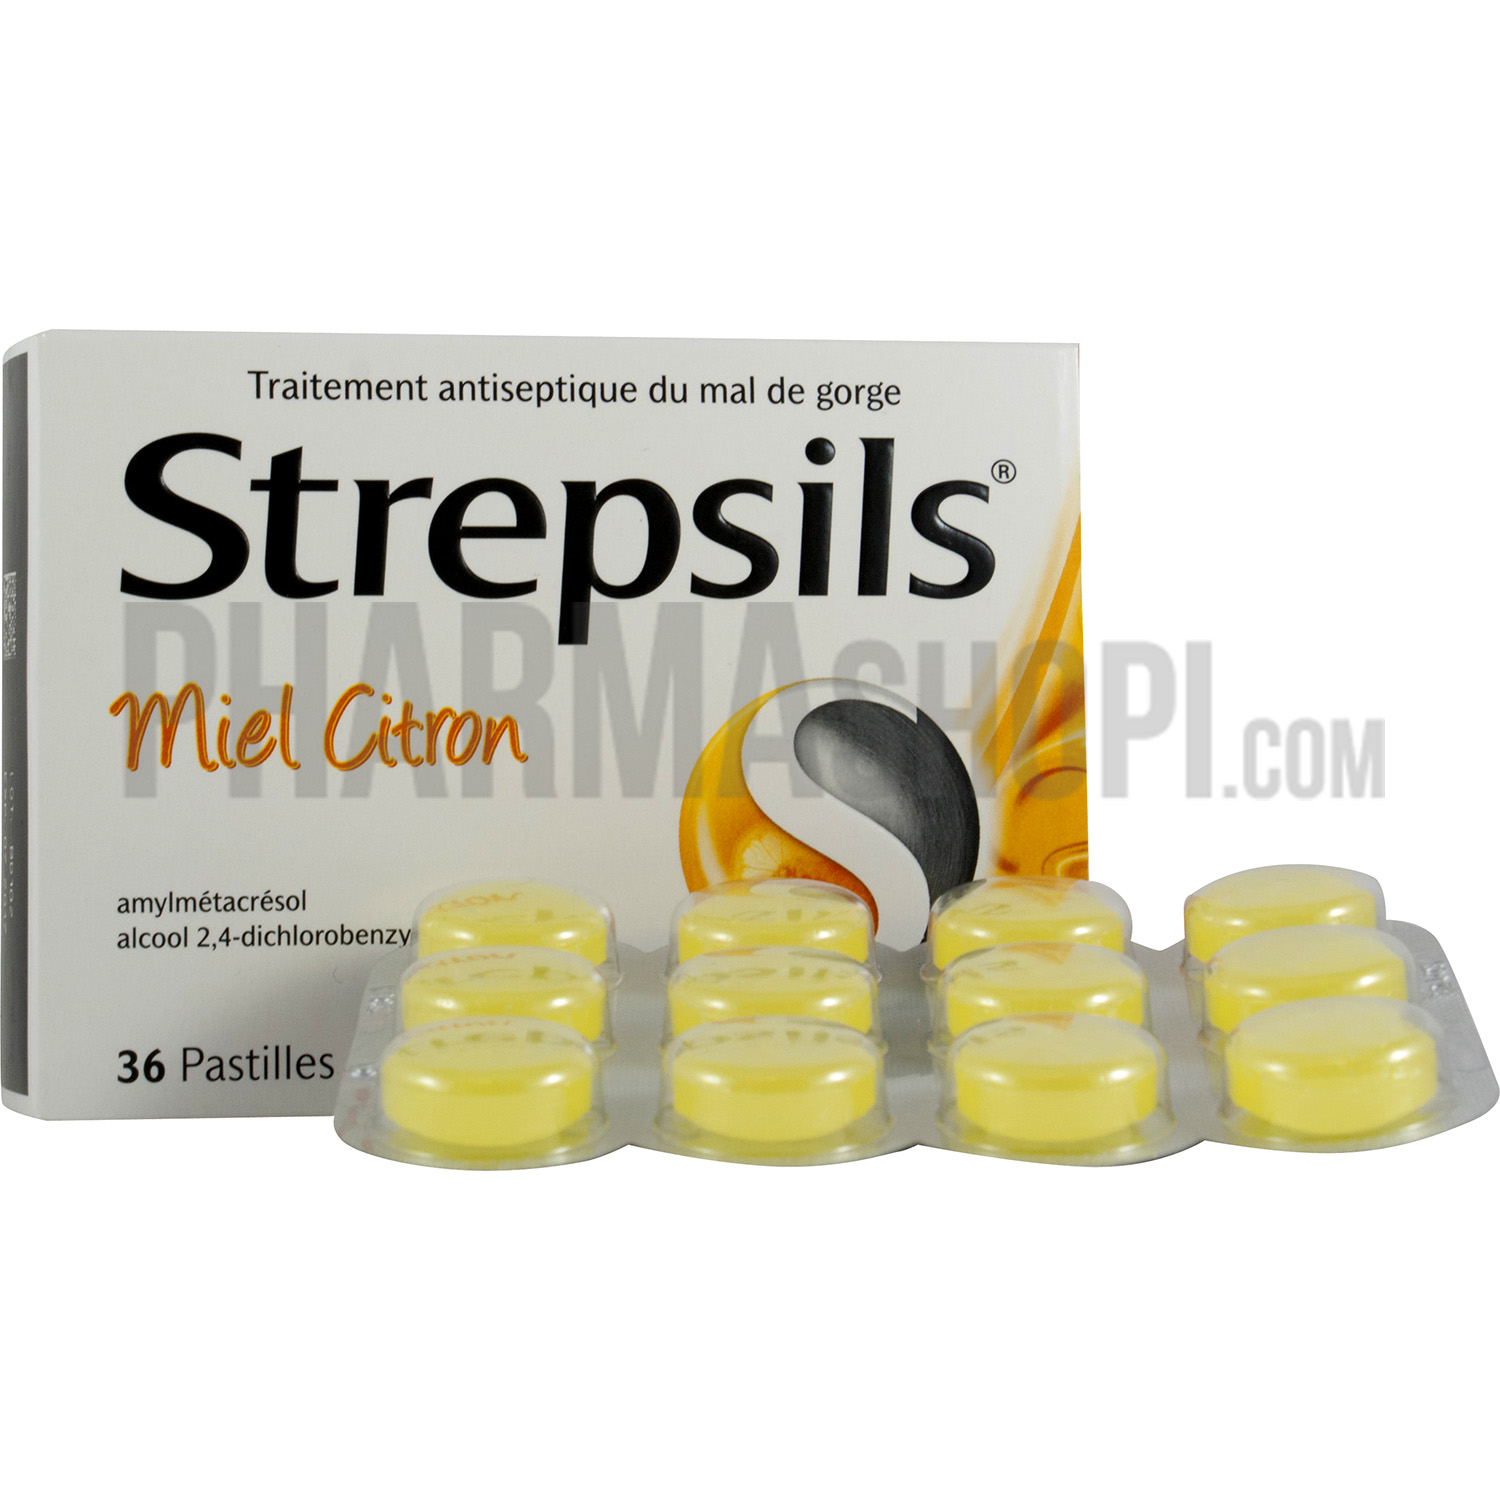 Strepsils miel citron sans sucre pastille à sucer - boite de 36 pastilles